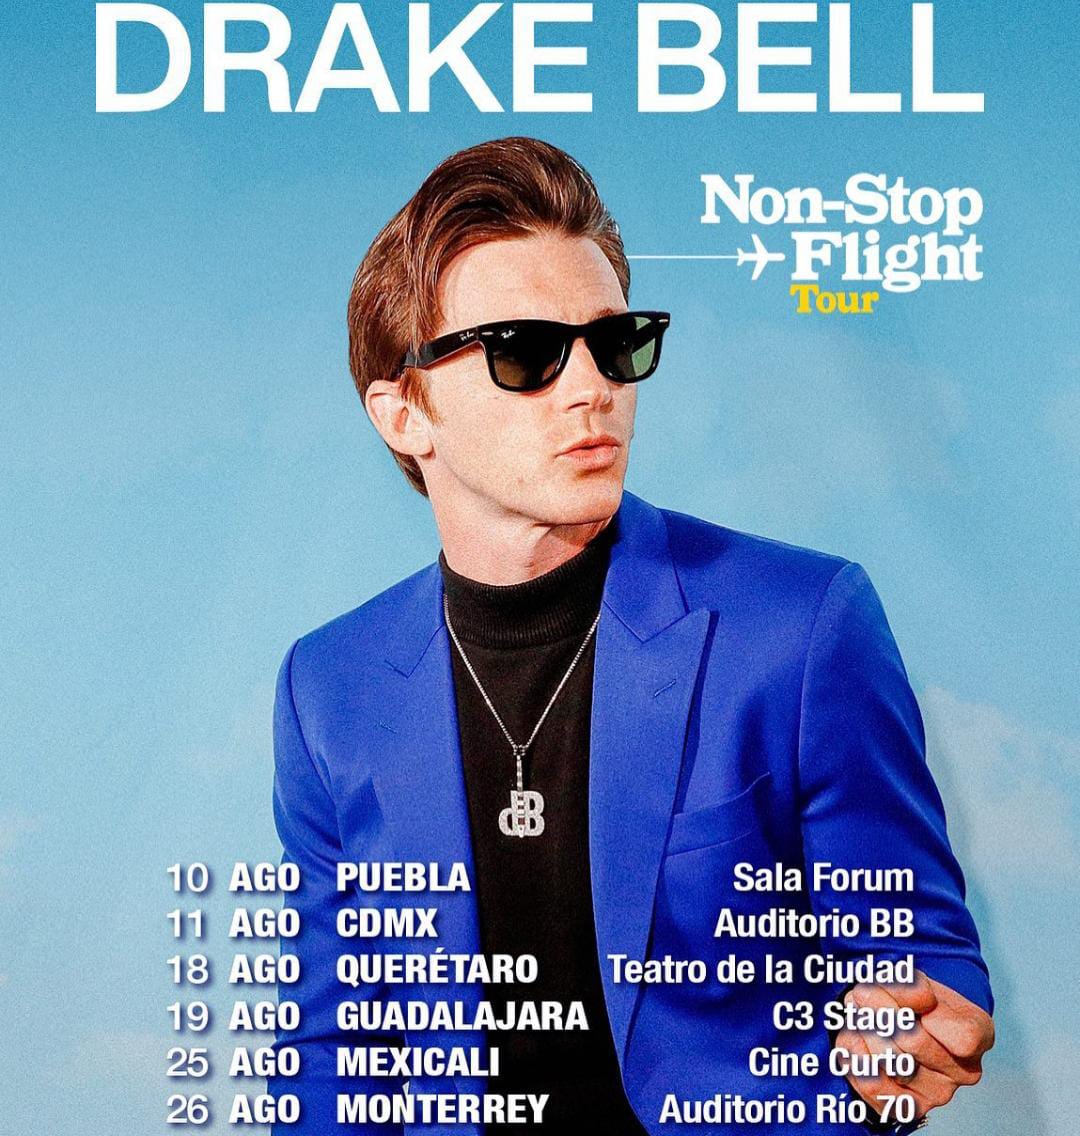 Drake Bell ¿Qué ciudades de México visitará?